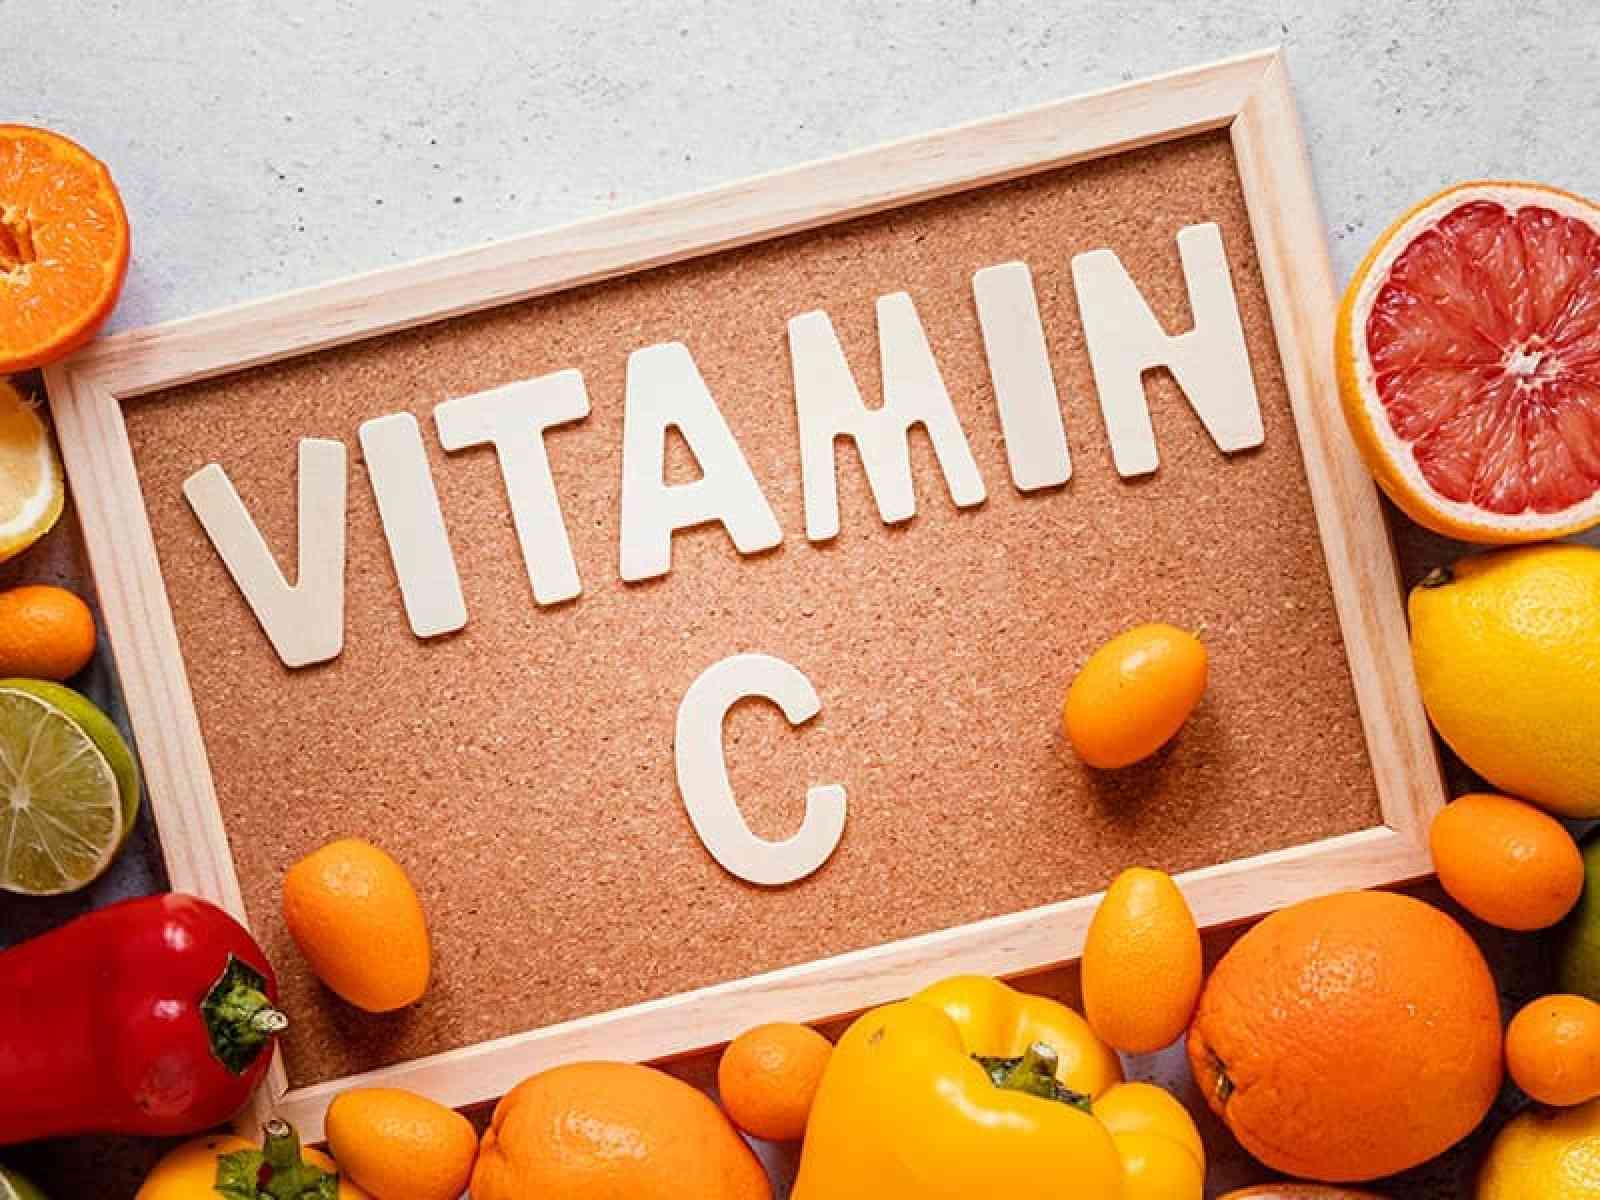 c-vitamini-ve-eksikliginde-gorulen-saglik-sorunlari